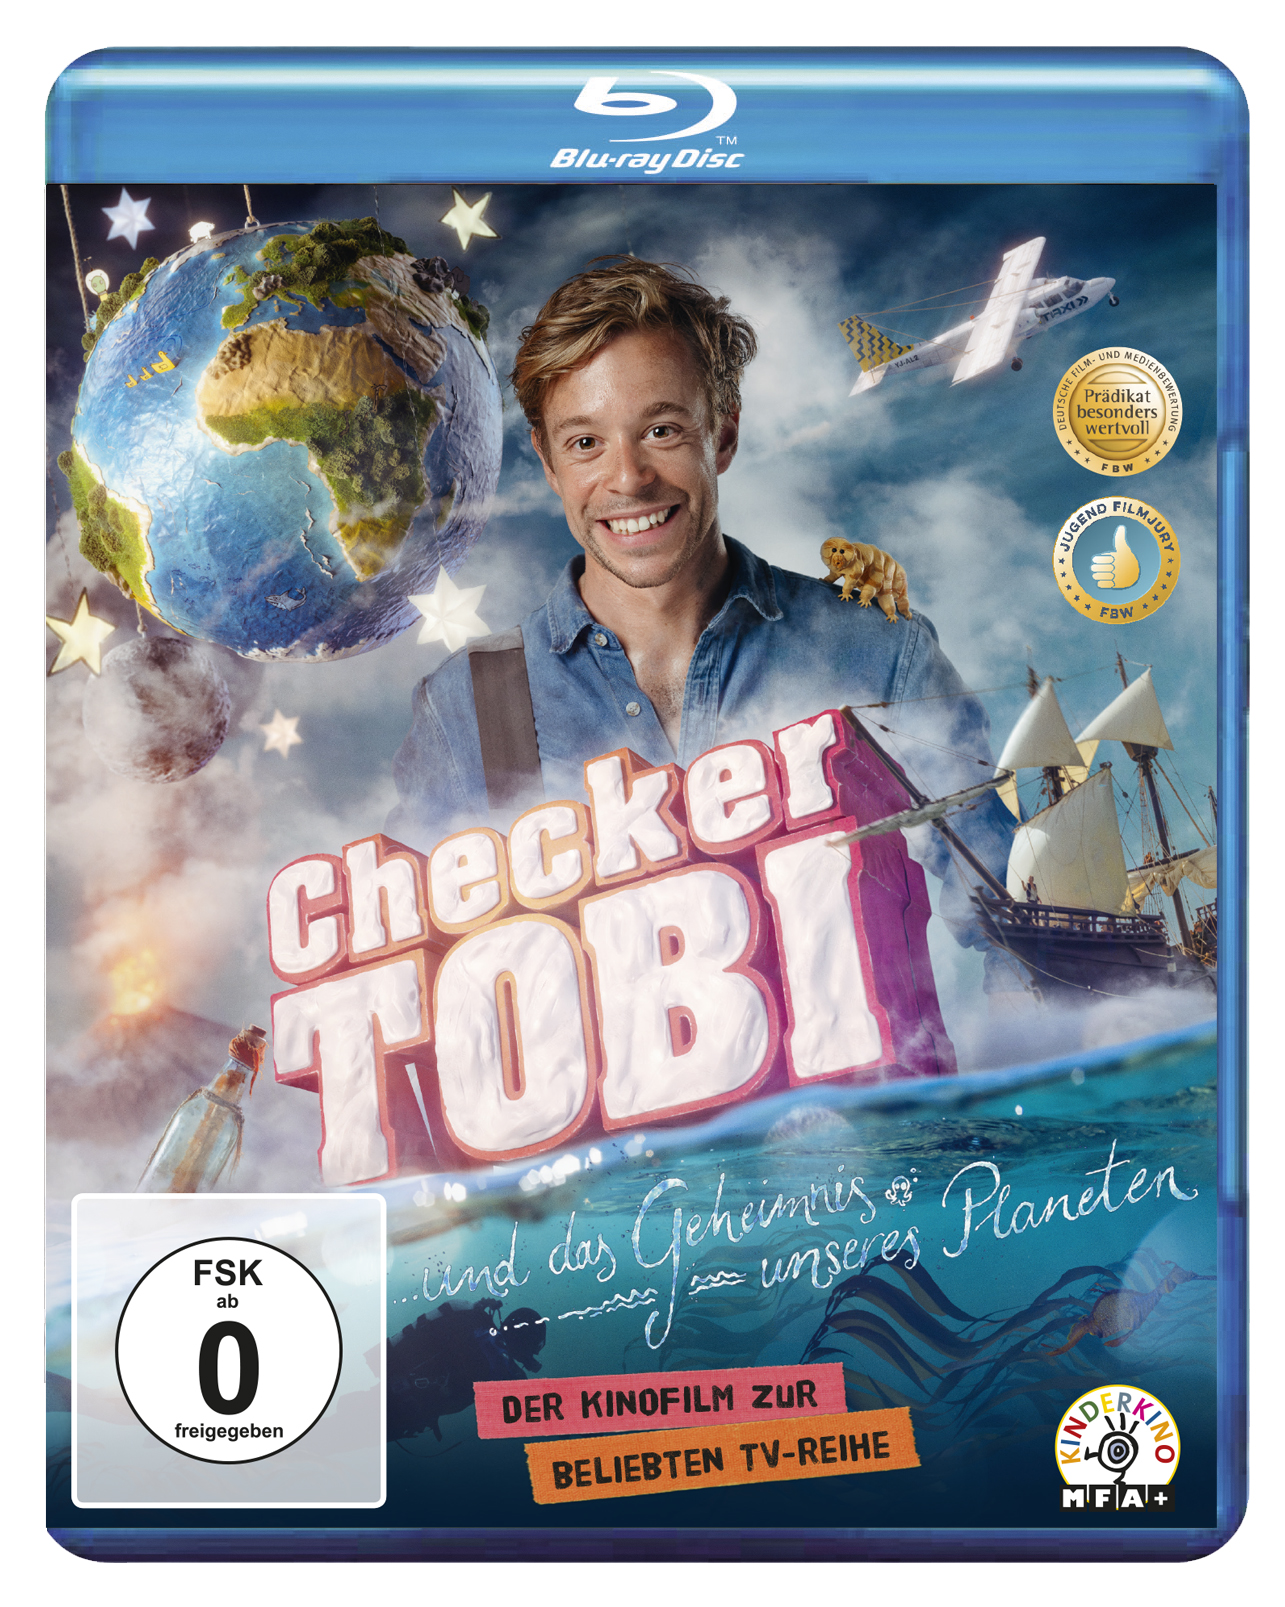 Tobi Planeten Blu-ray und das Checker unseres Geheimnis